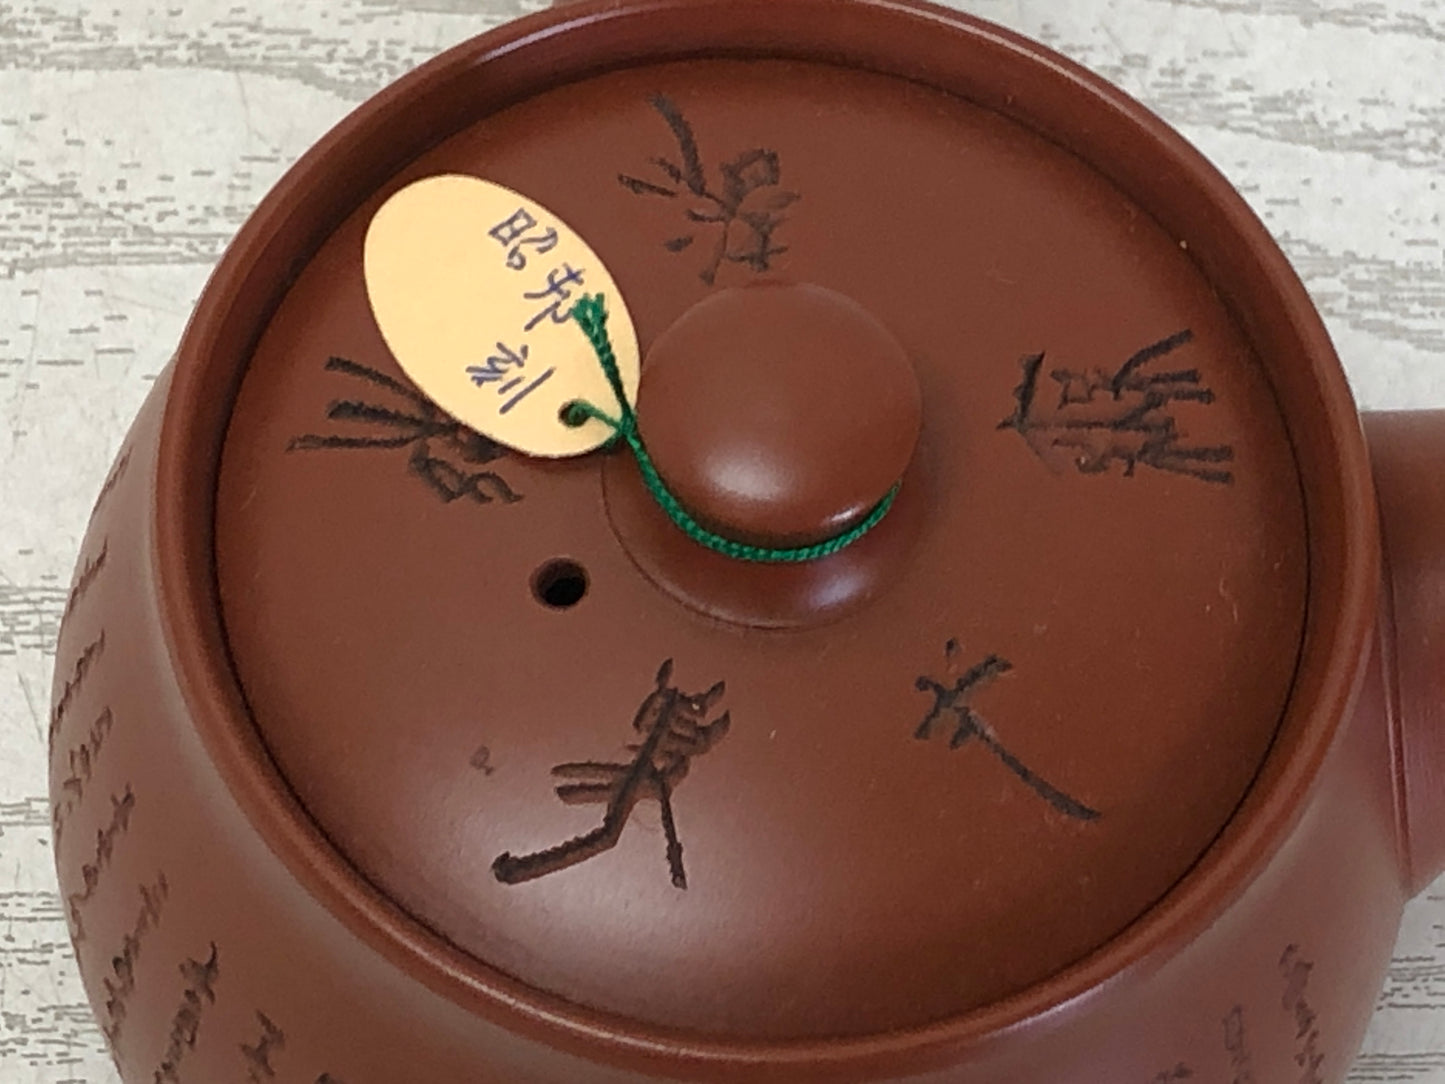 Y3222 KYUSU Tokoname-ware teapot Chinese poetry carving Shunzan Japan antique